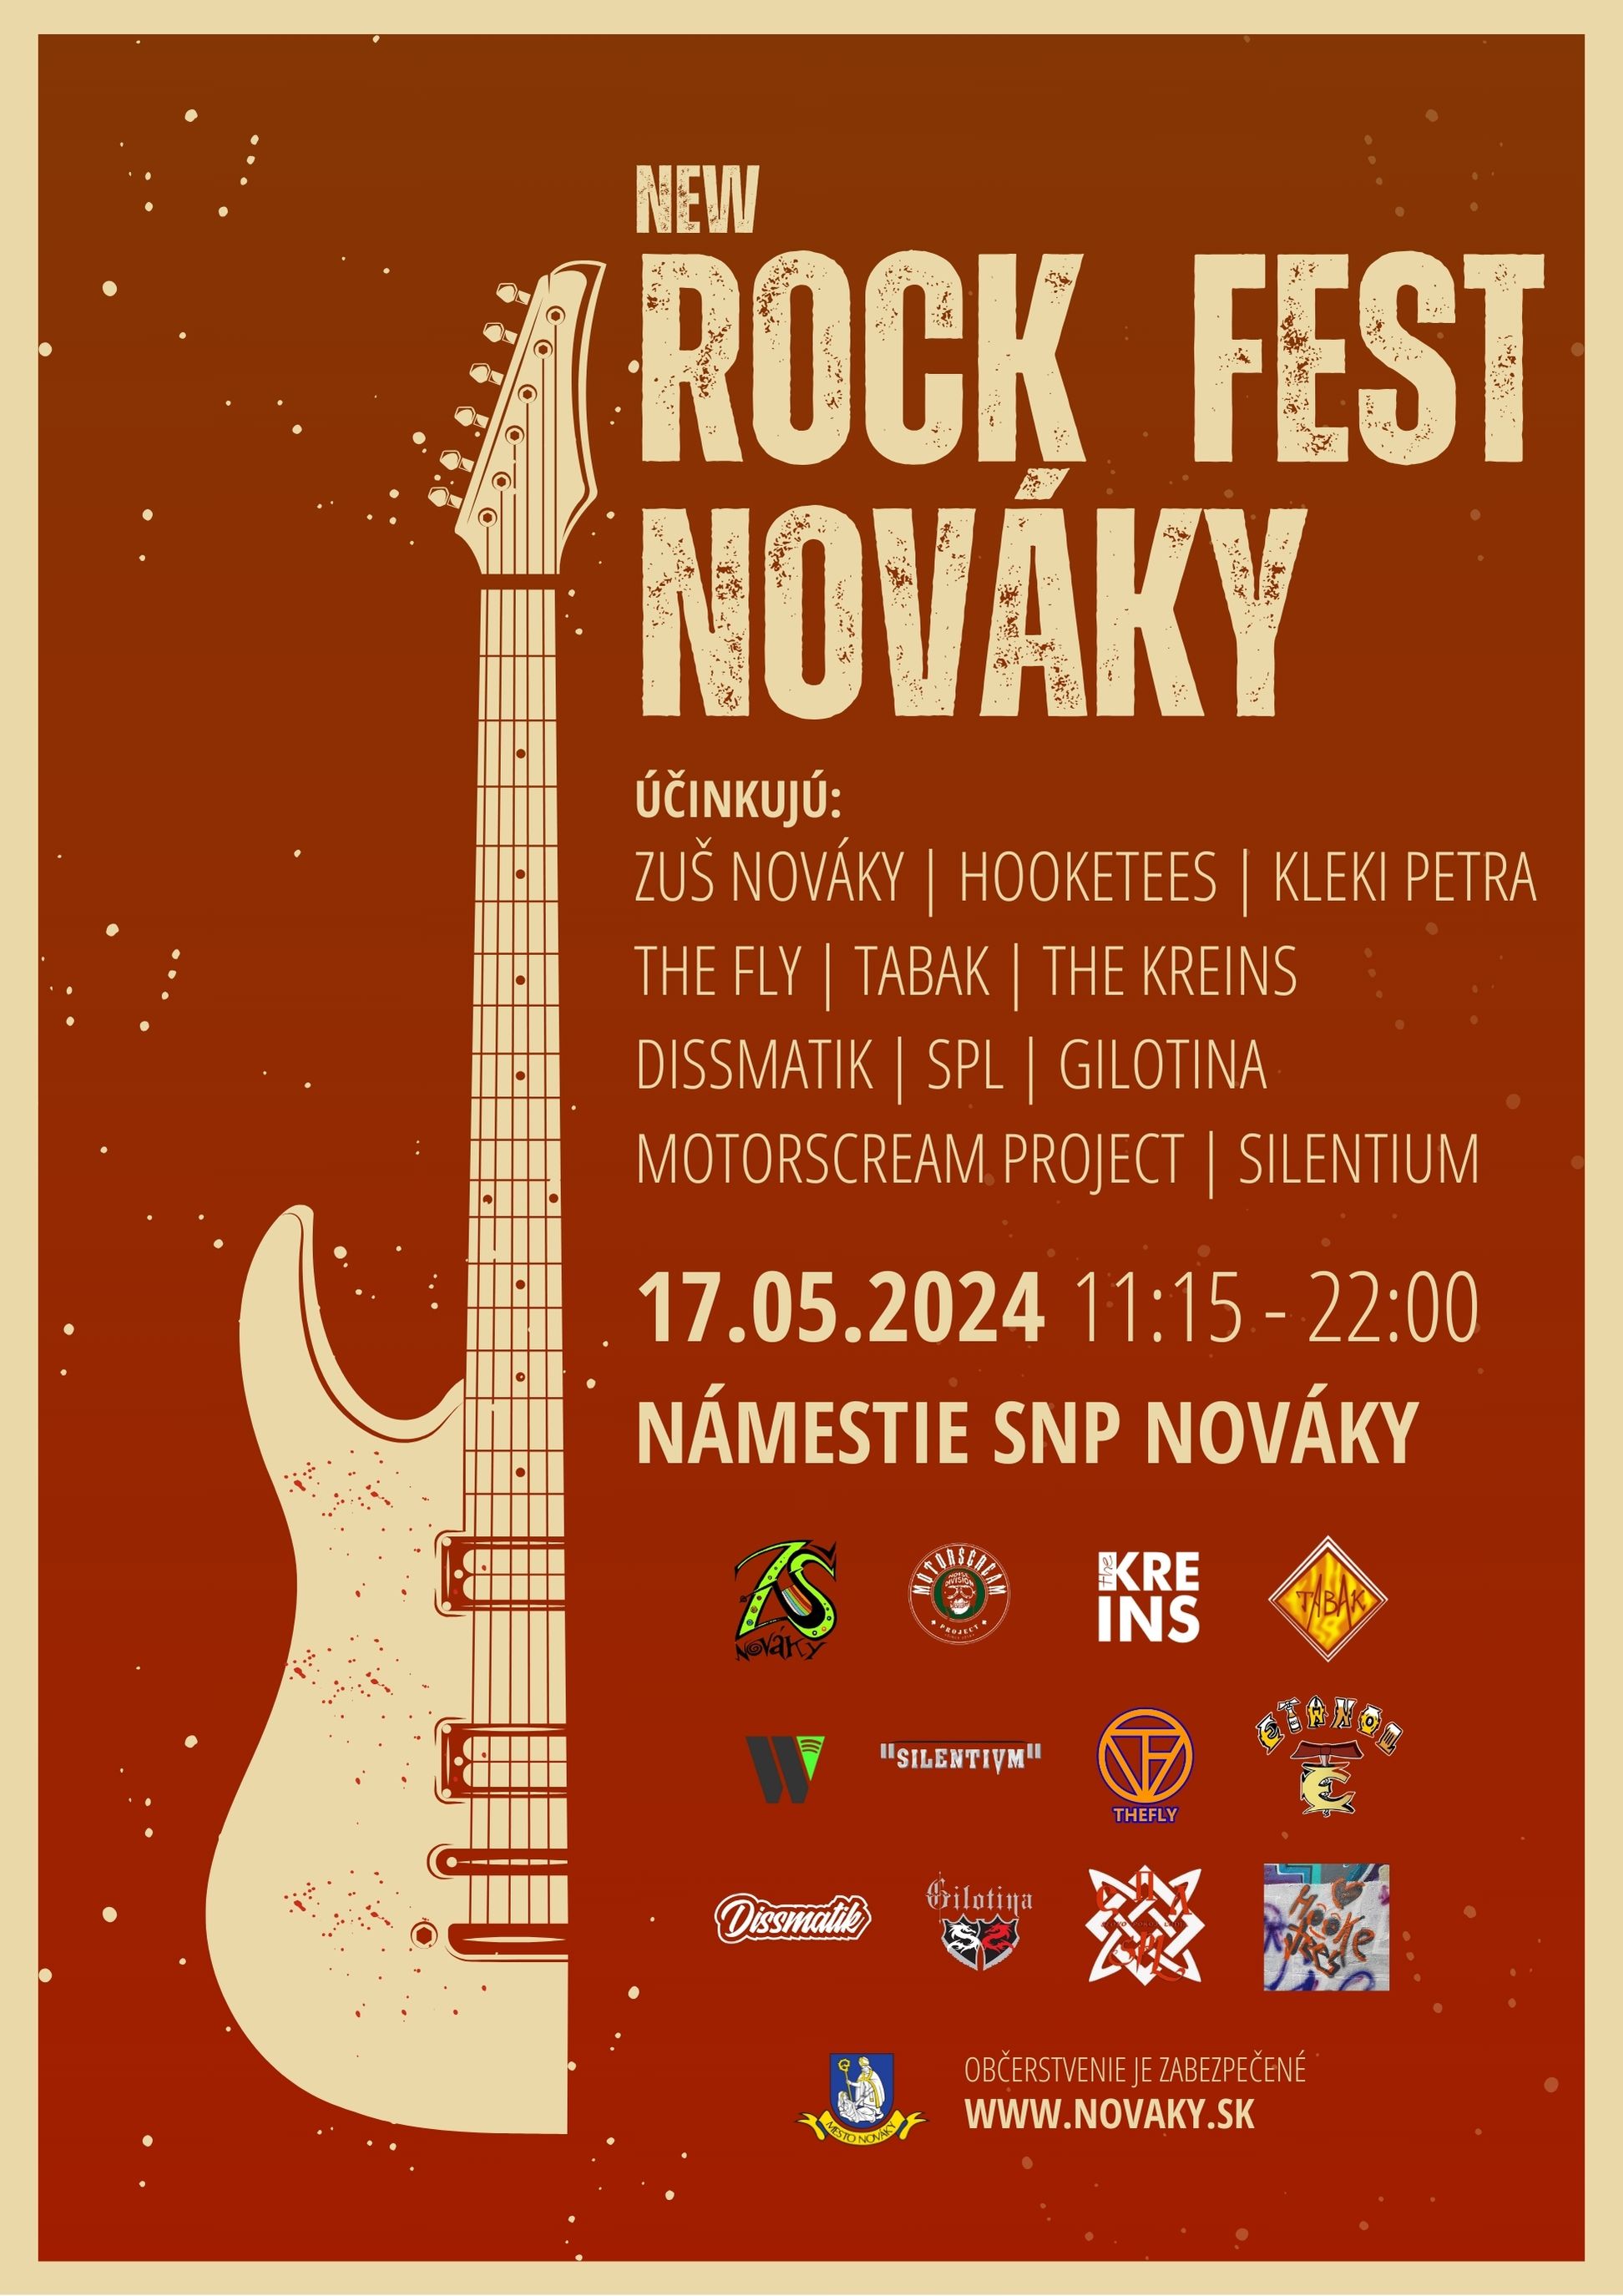 NEW ROCK FEST NOVKY